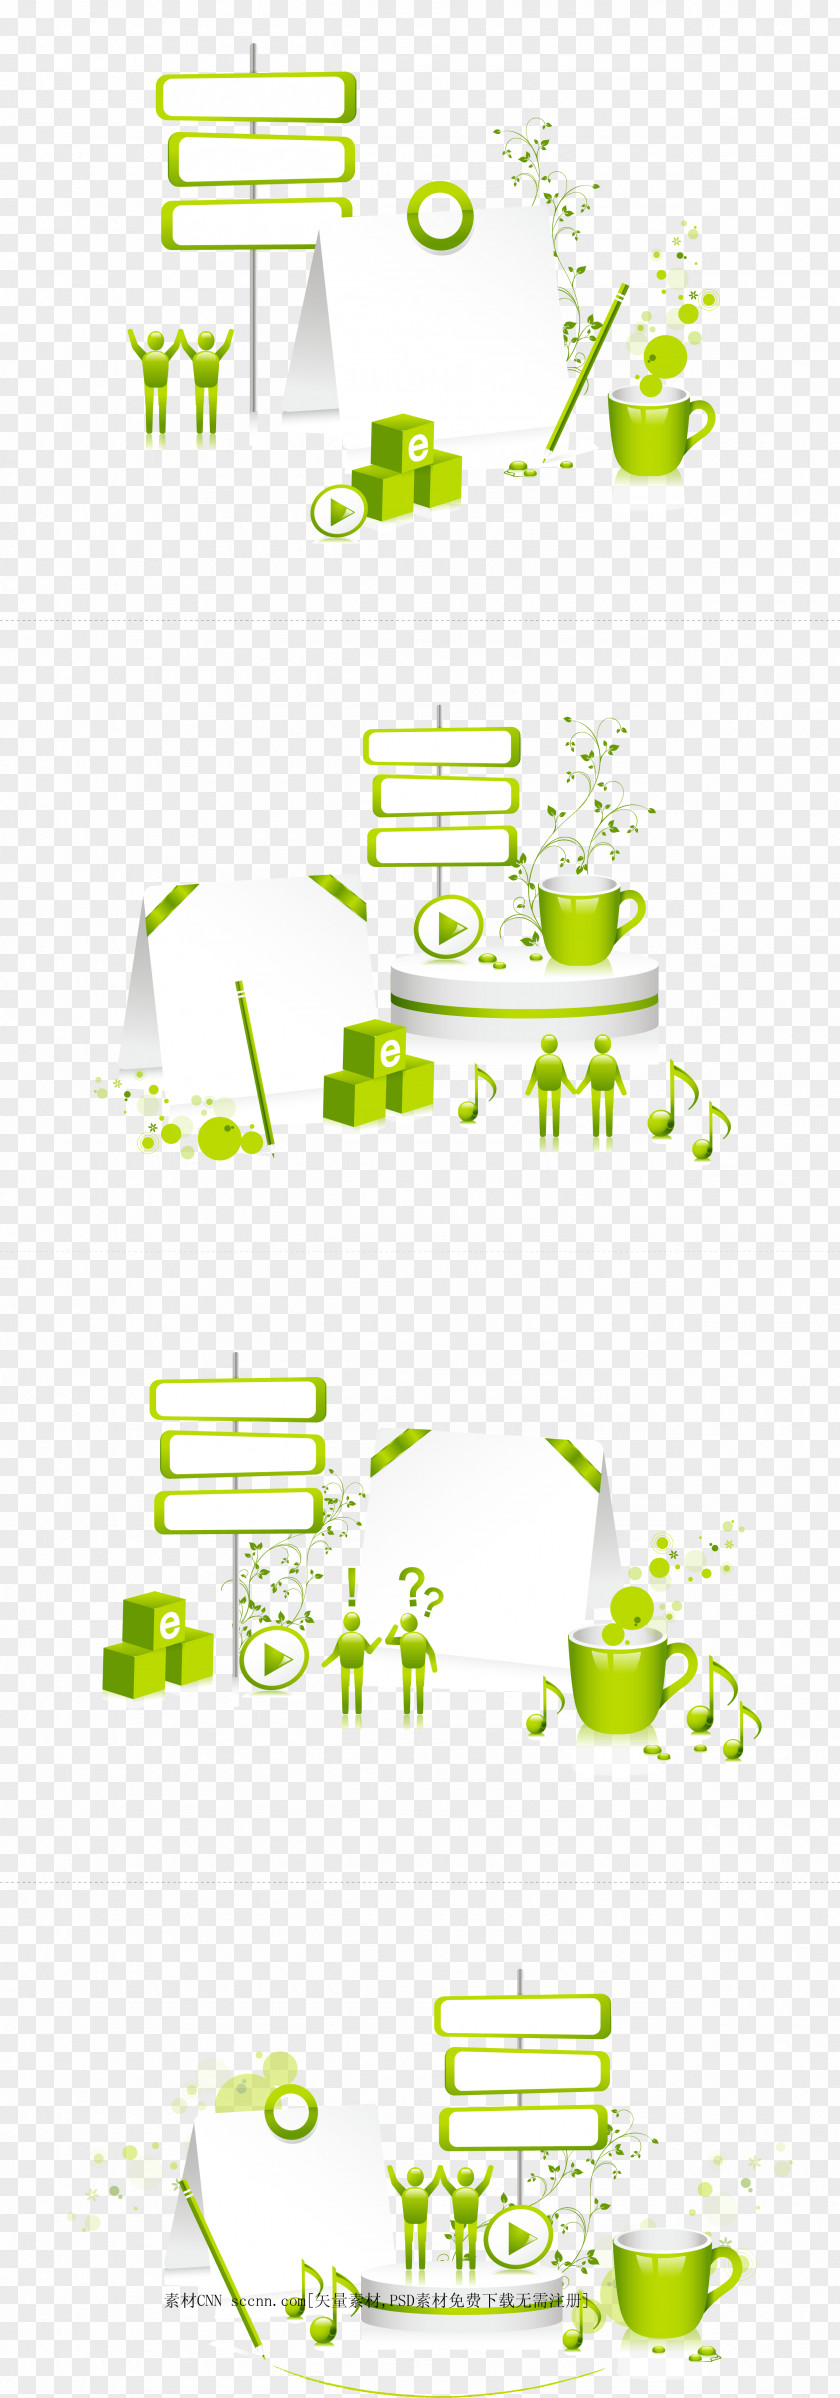 Green Living 3D Design Elements Vector Material 01. Computer Graphics PNG